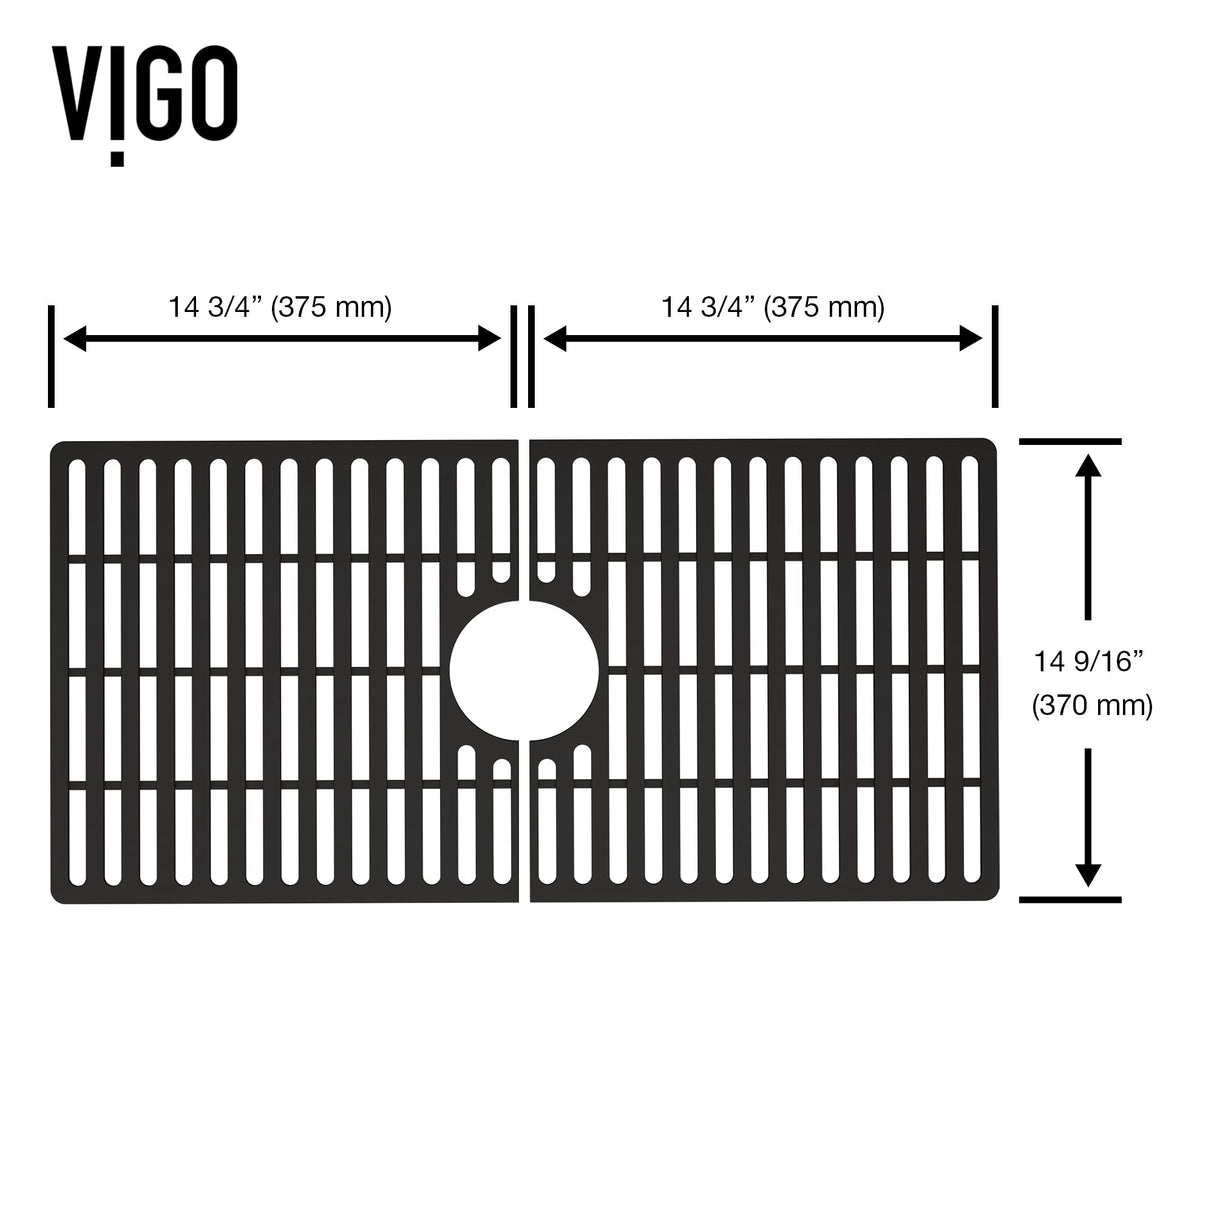 VIGO 30 in. x 15 in. Silicone Bottom Grid for Single Bowl Kitchen Sink in Black